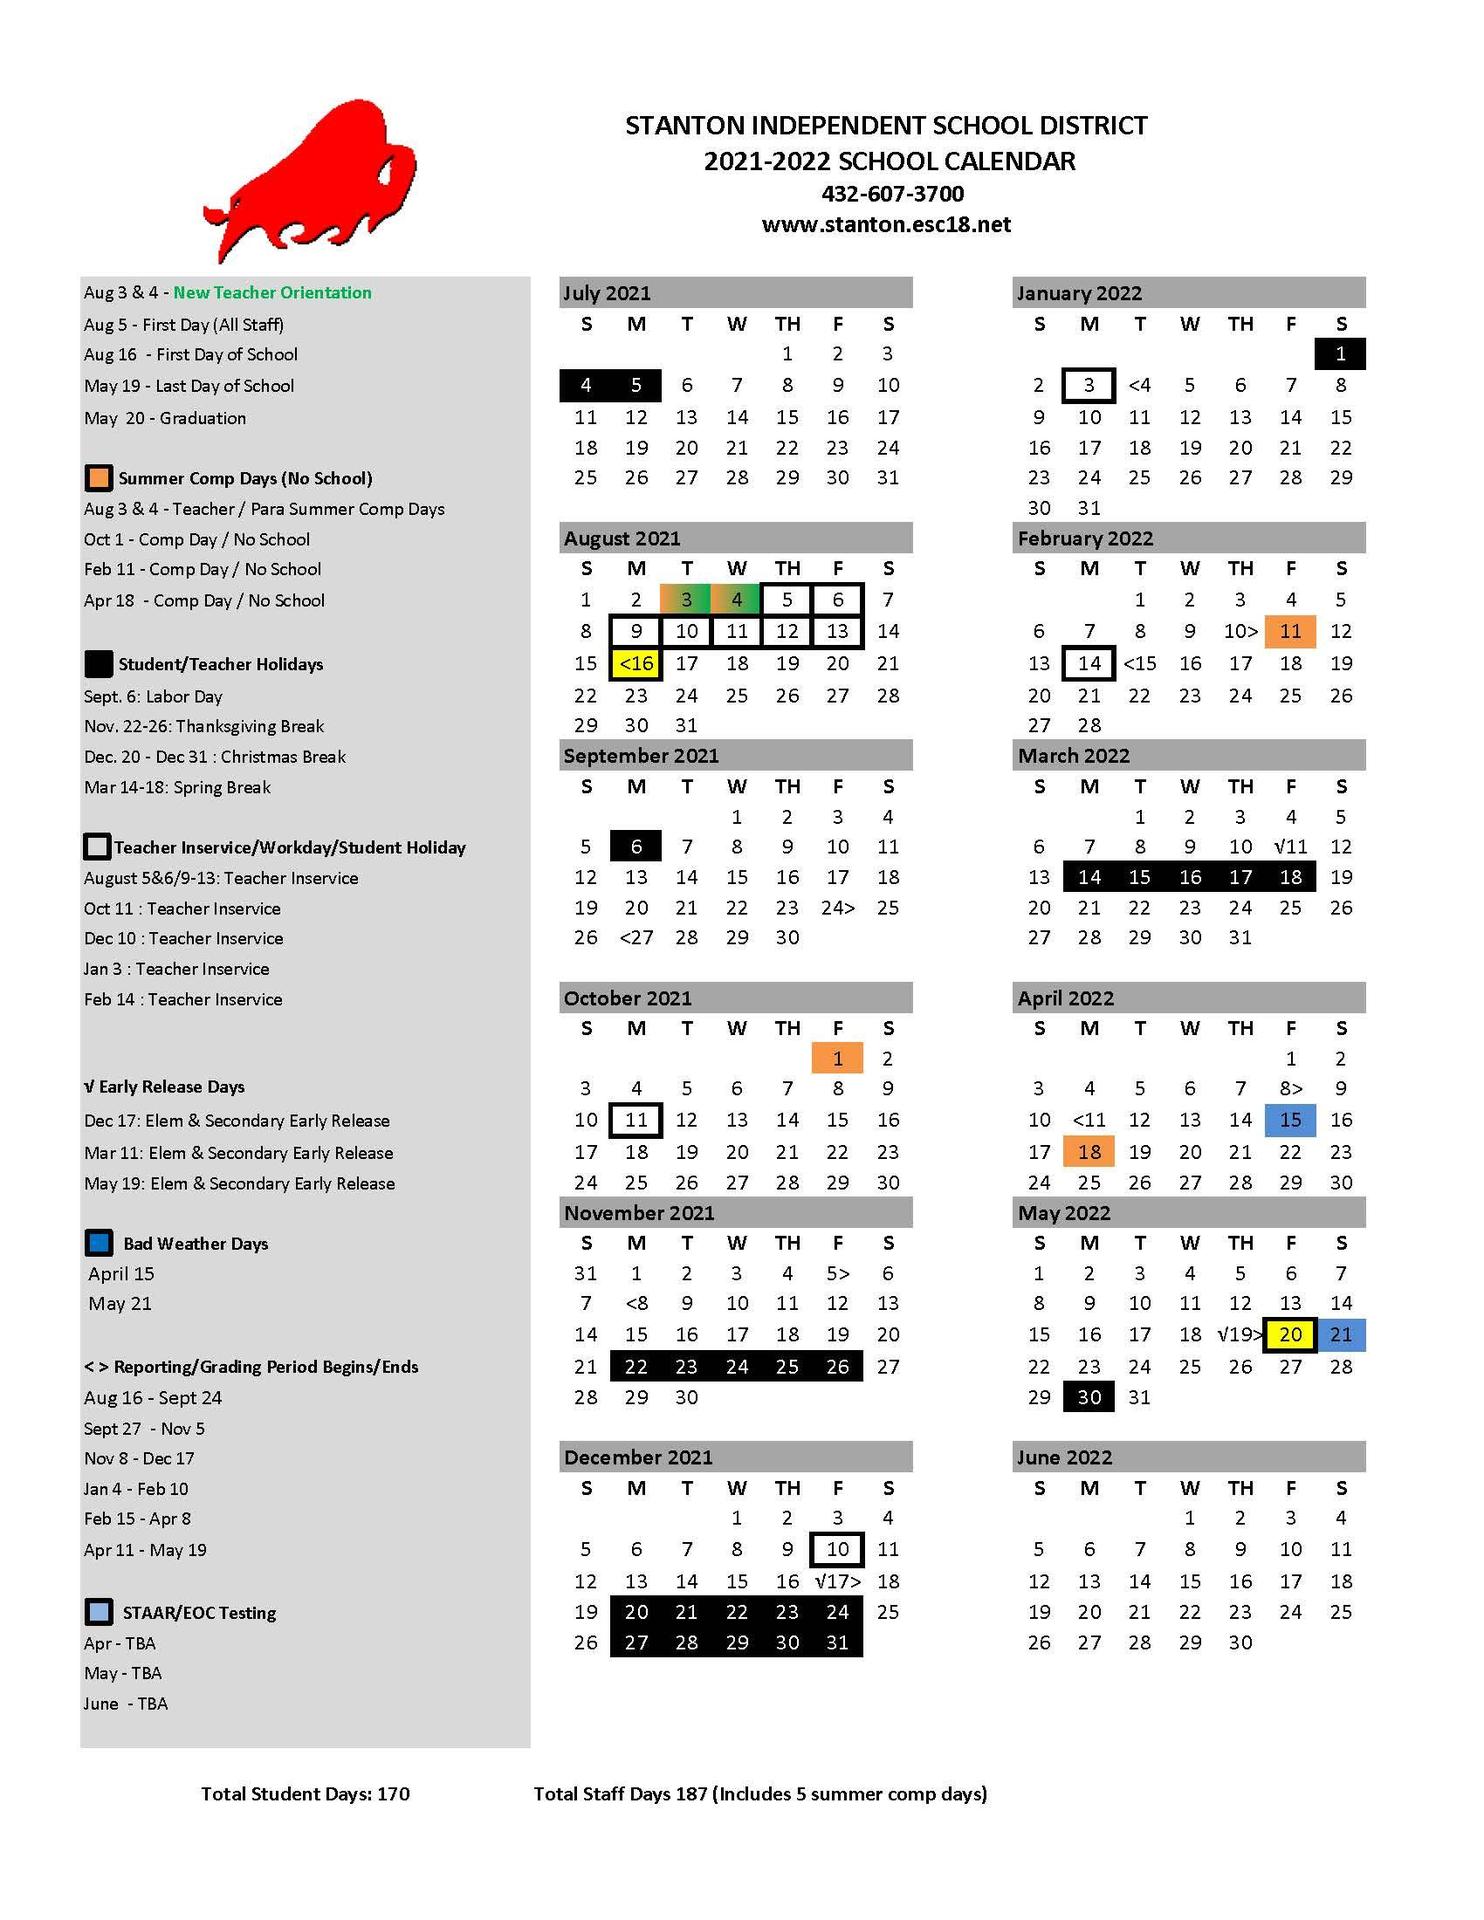 Stanton Independent School District 2021-2022 School Calendar